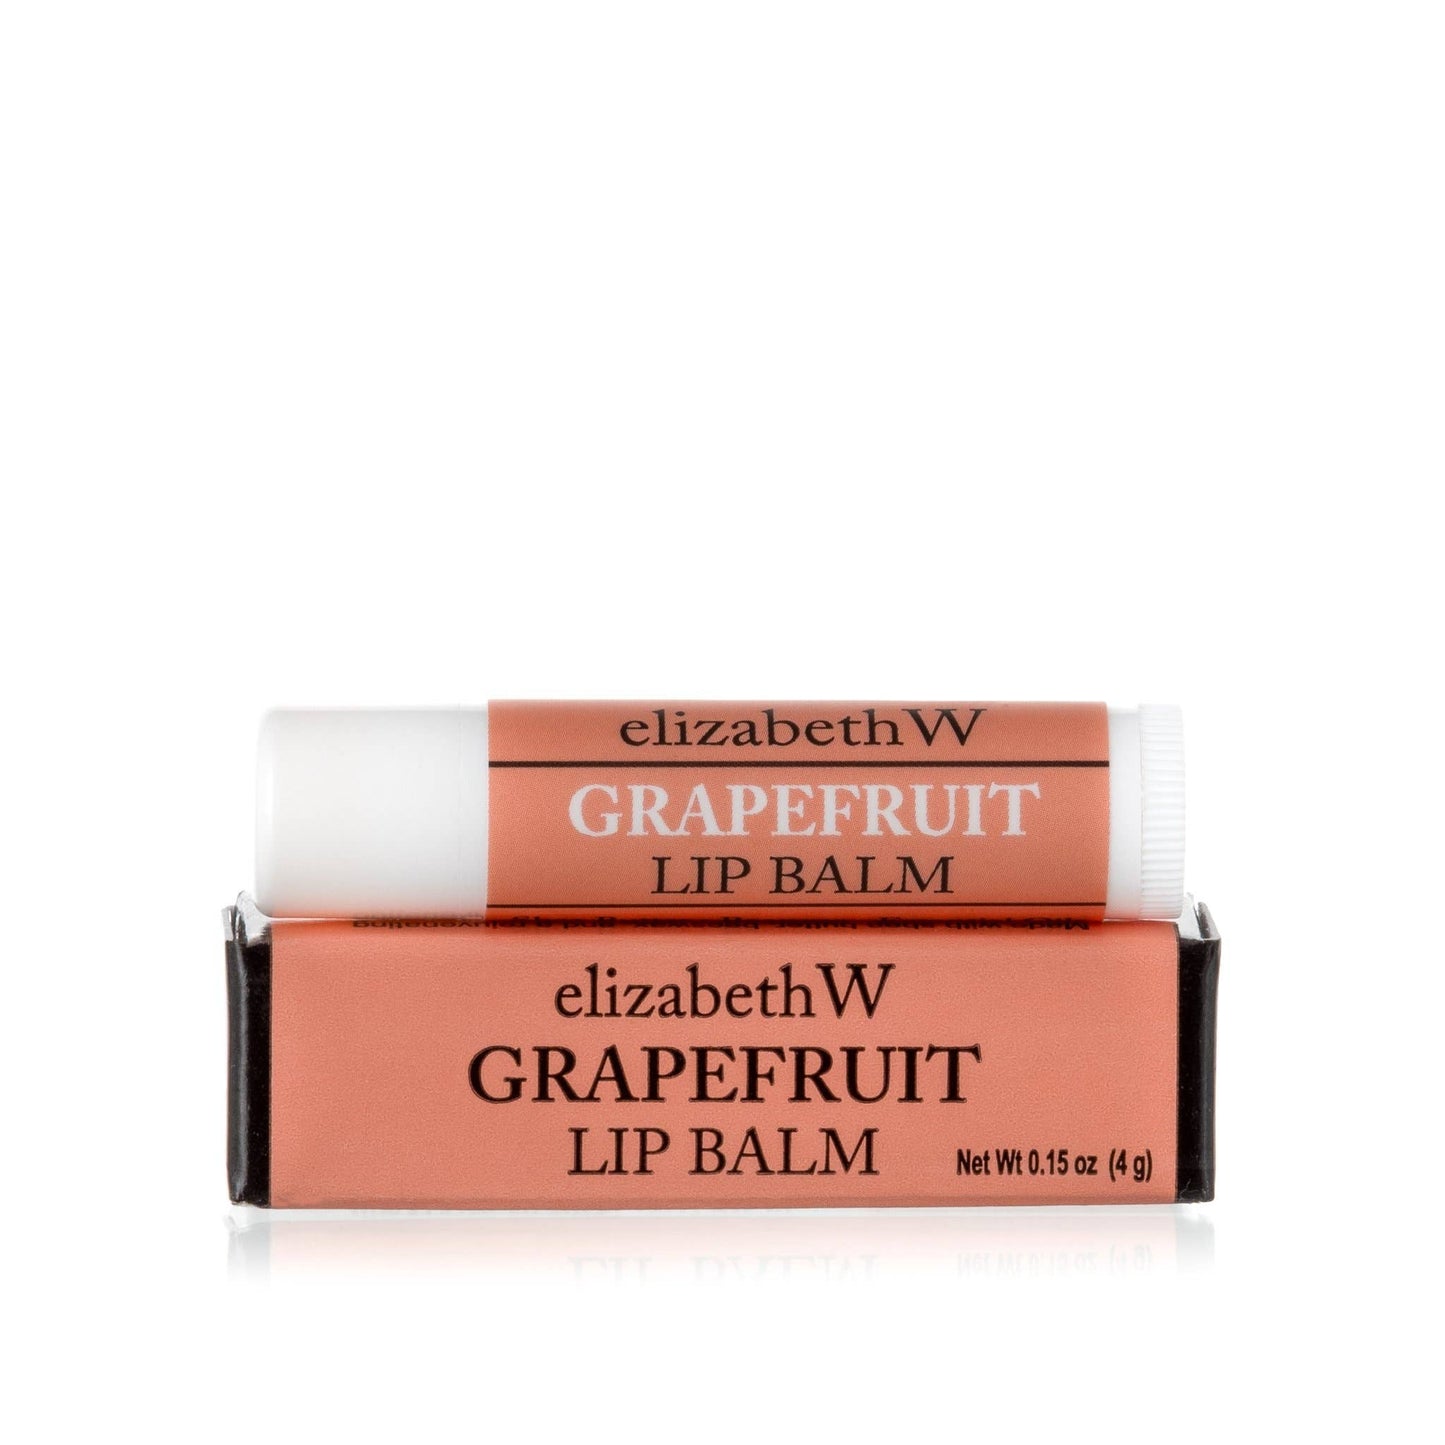 elizabethW - Grapefruit Lip Balm